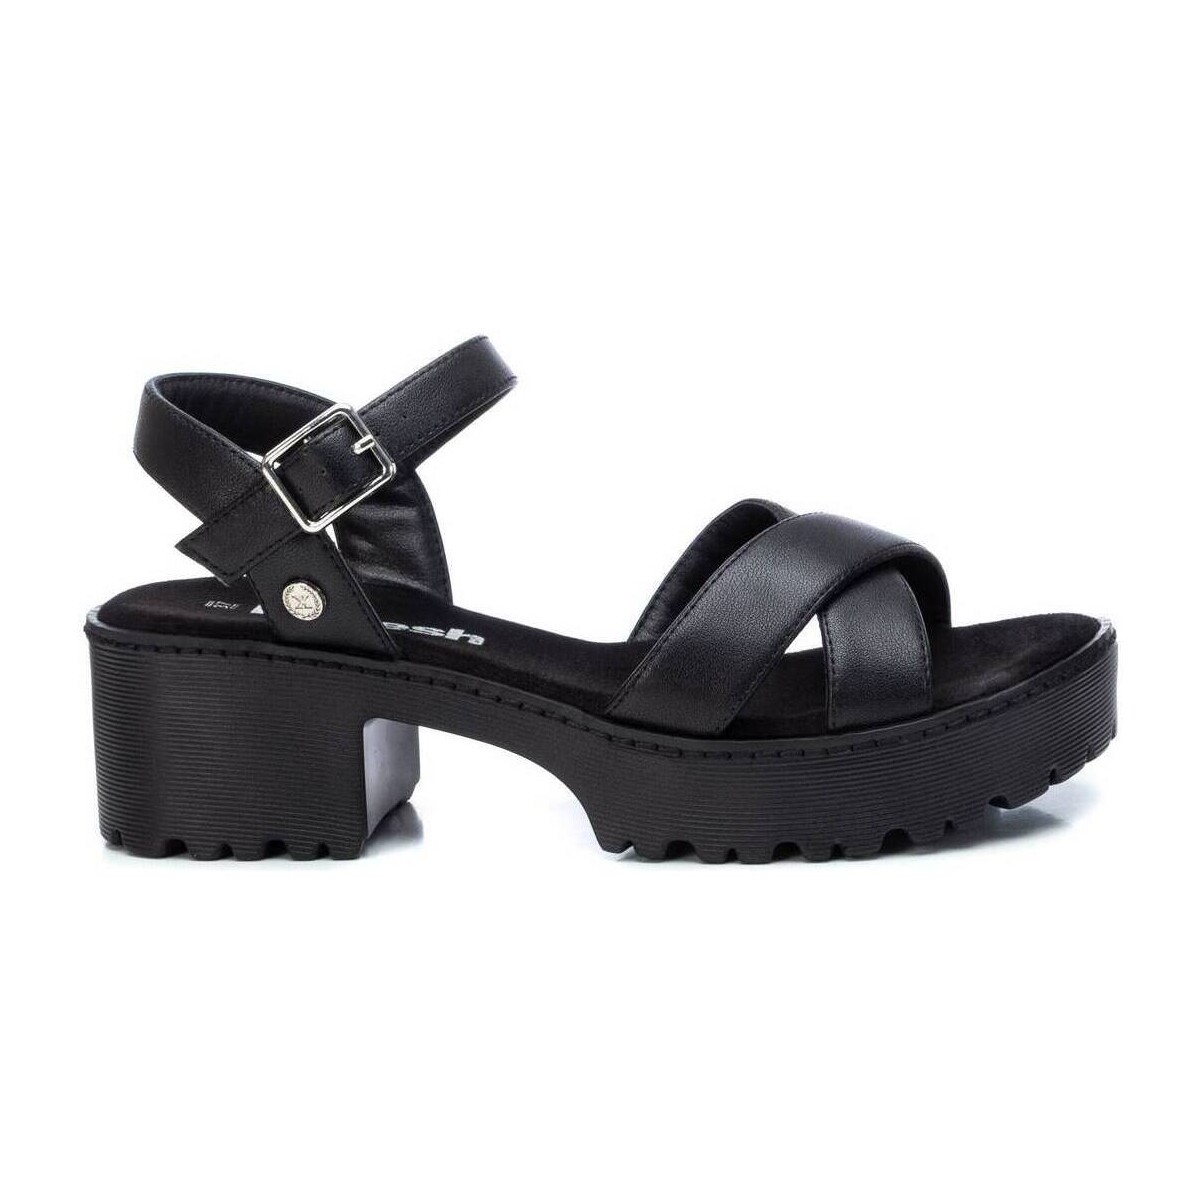 Chaussures Femme Sandales et Nu-pieds Refresh 07928101 Noir